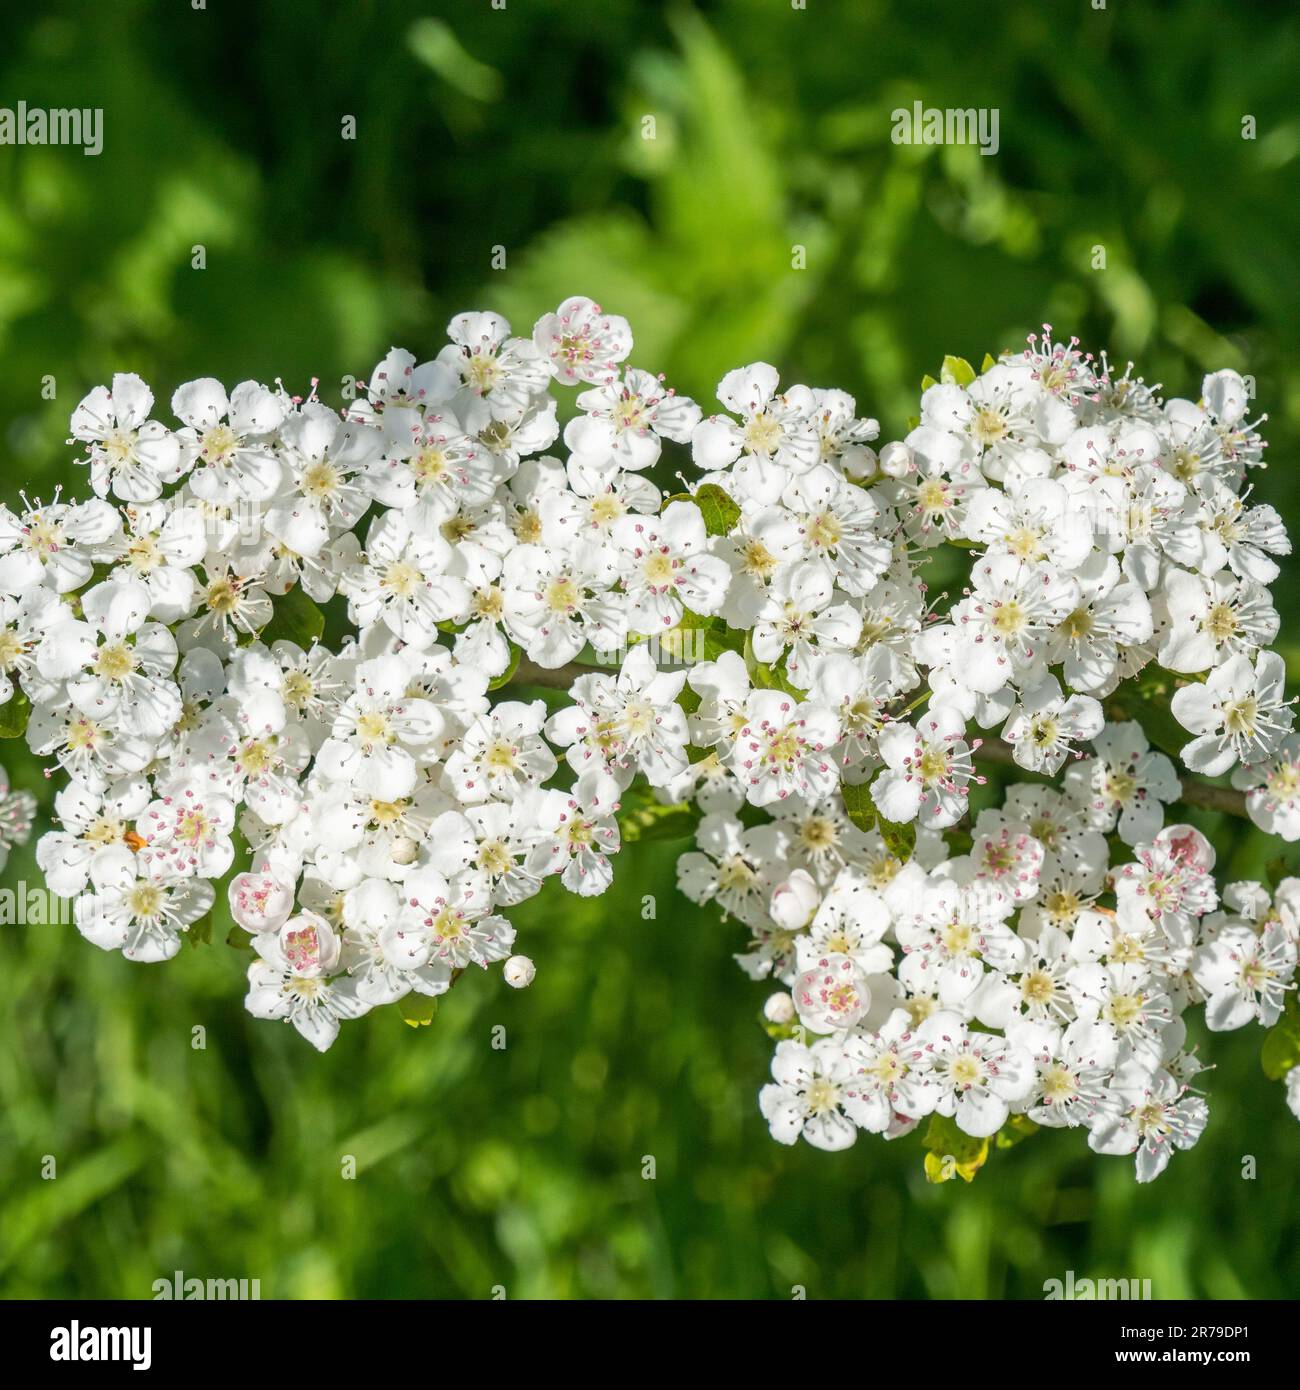 Nahaufnahme der Blüte von weißem Weissdorn (Crataegus monogyna) und grünem Blattwerk, Mai, Vereinigtes Königreich. Stockfoto